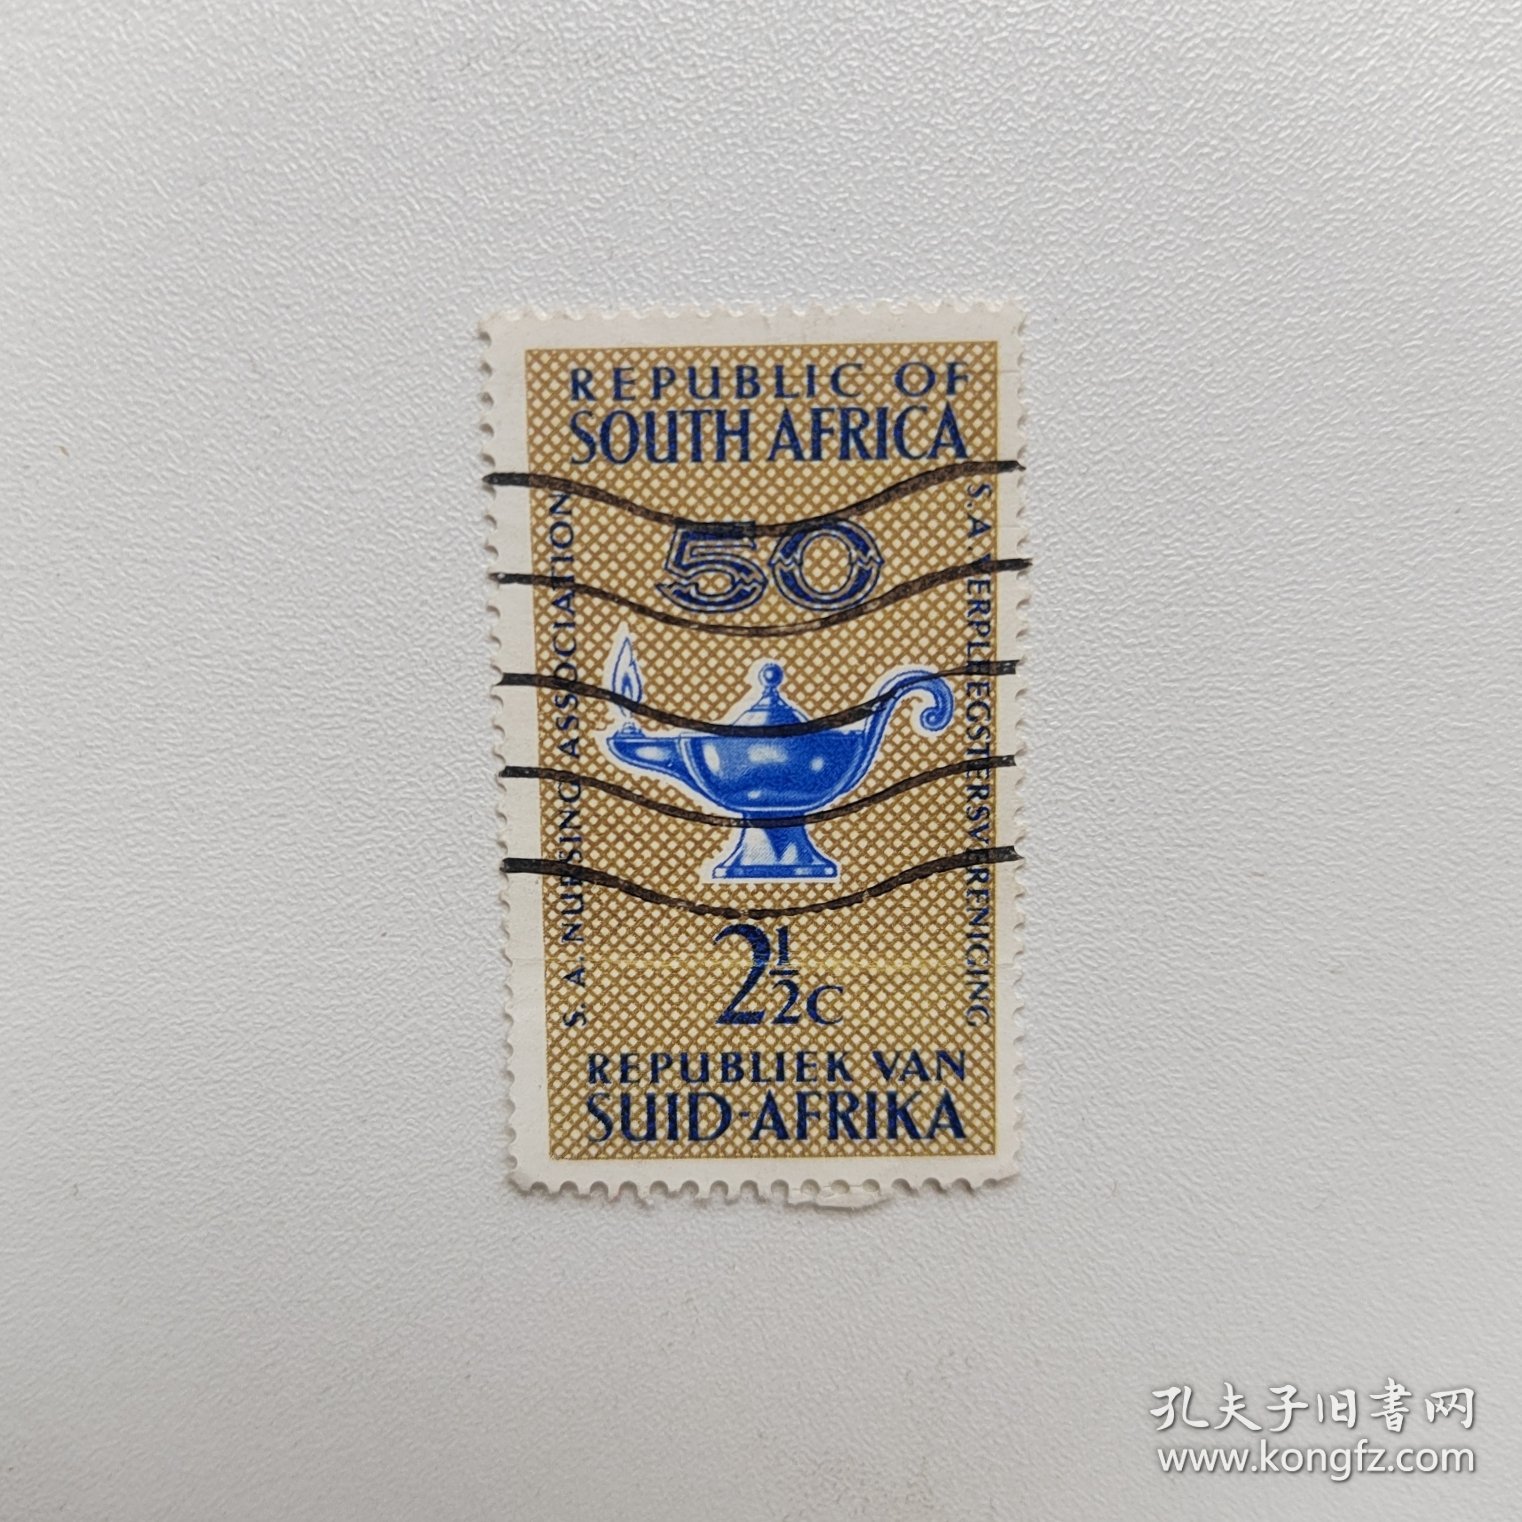 外国邮票 南非邮票阿拉丁神灯 信销1枚 如图硬折